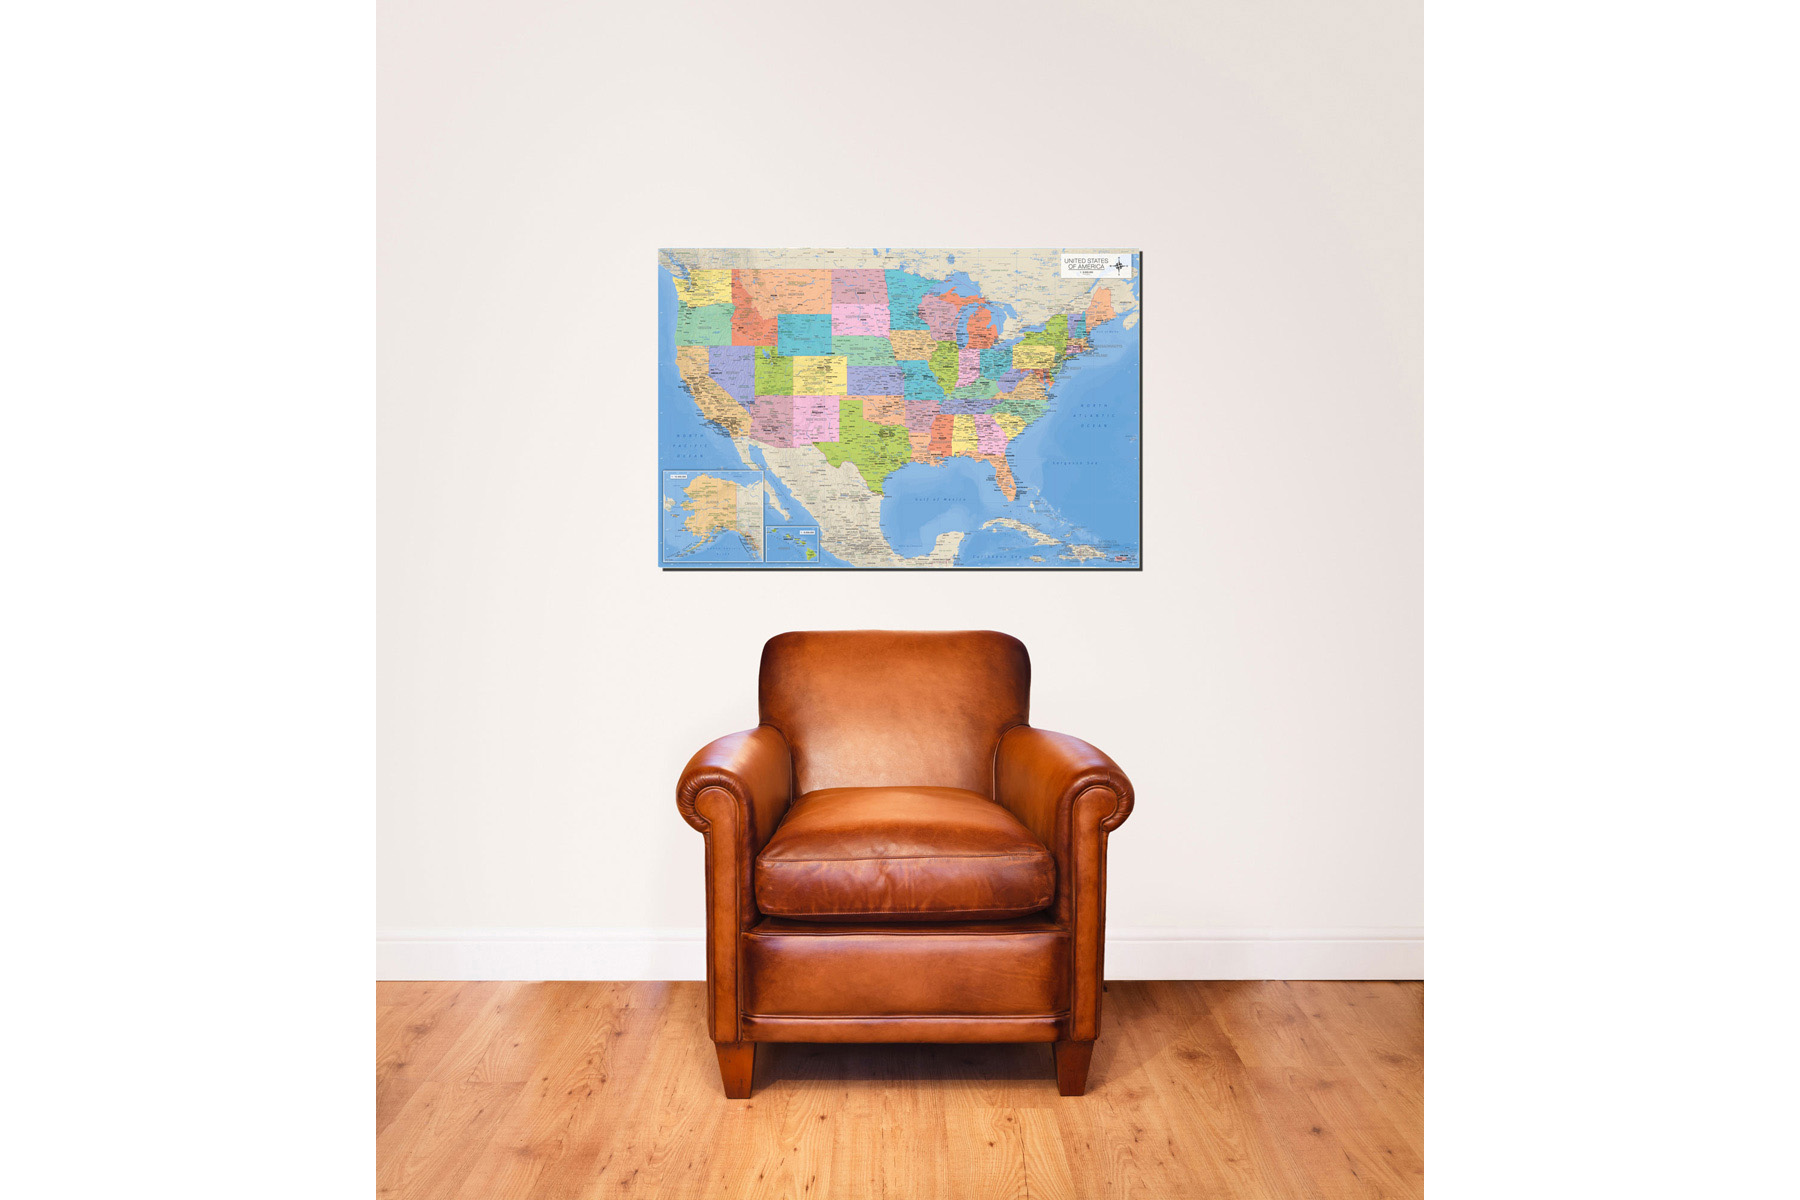 USA of Landkarten - Map the